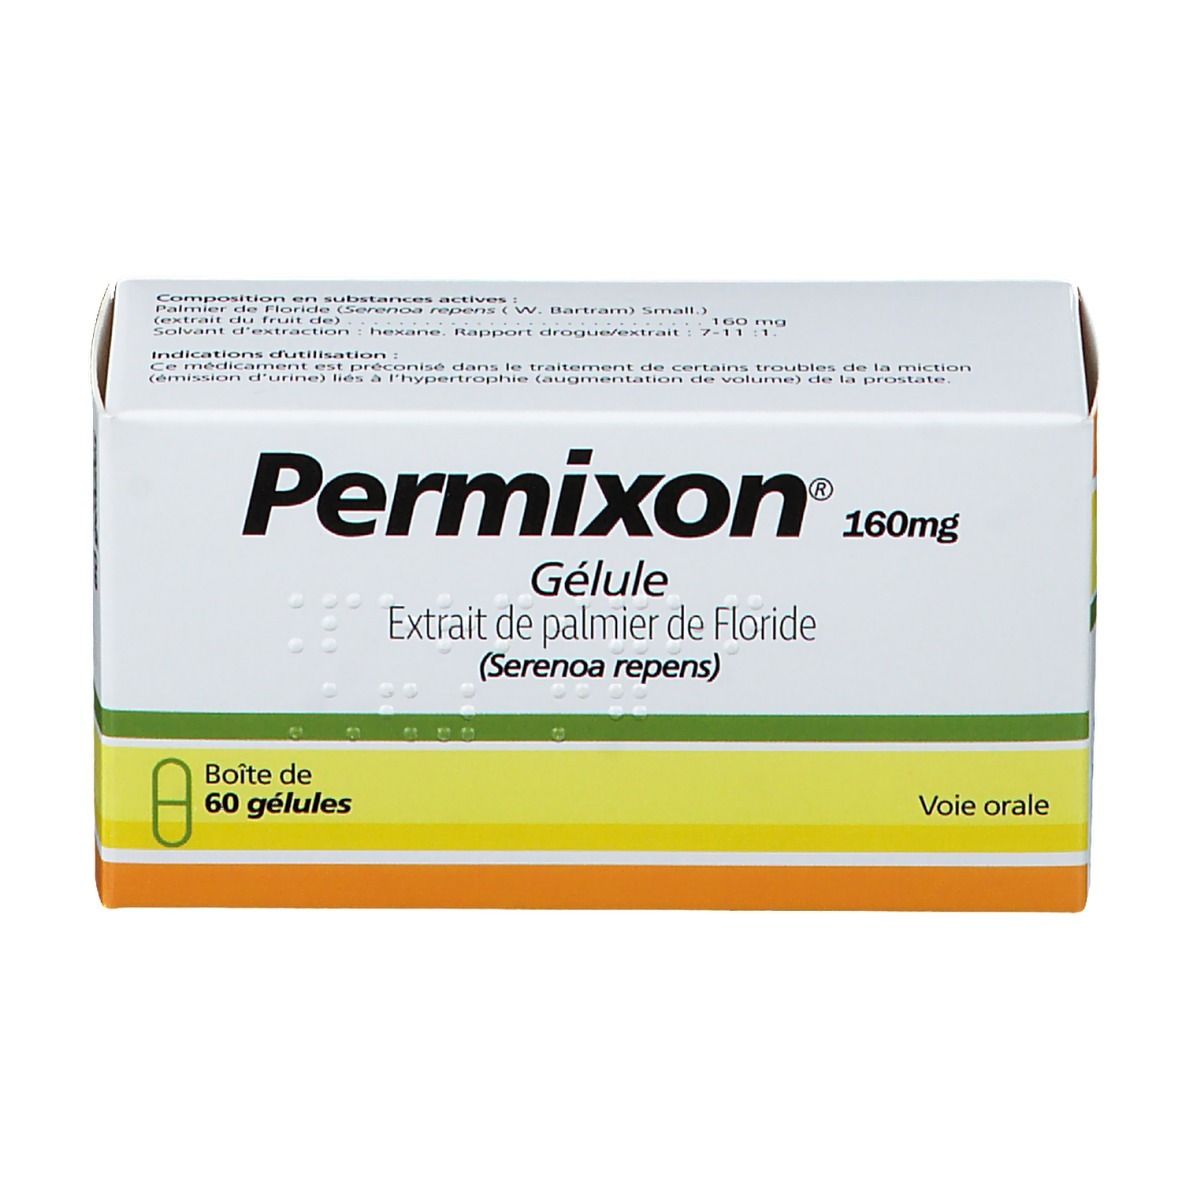 Permixon® 160 mg